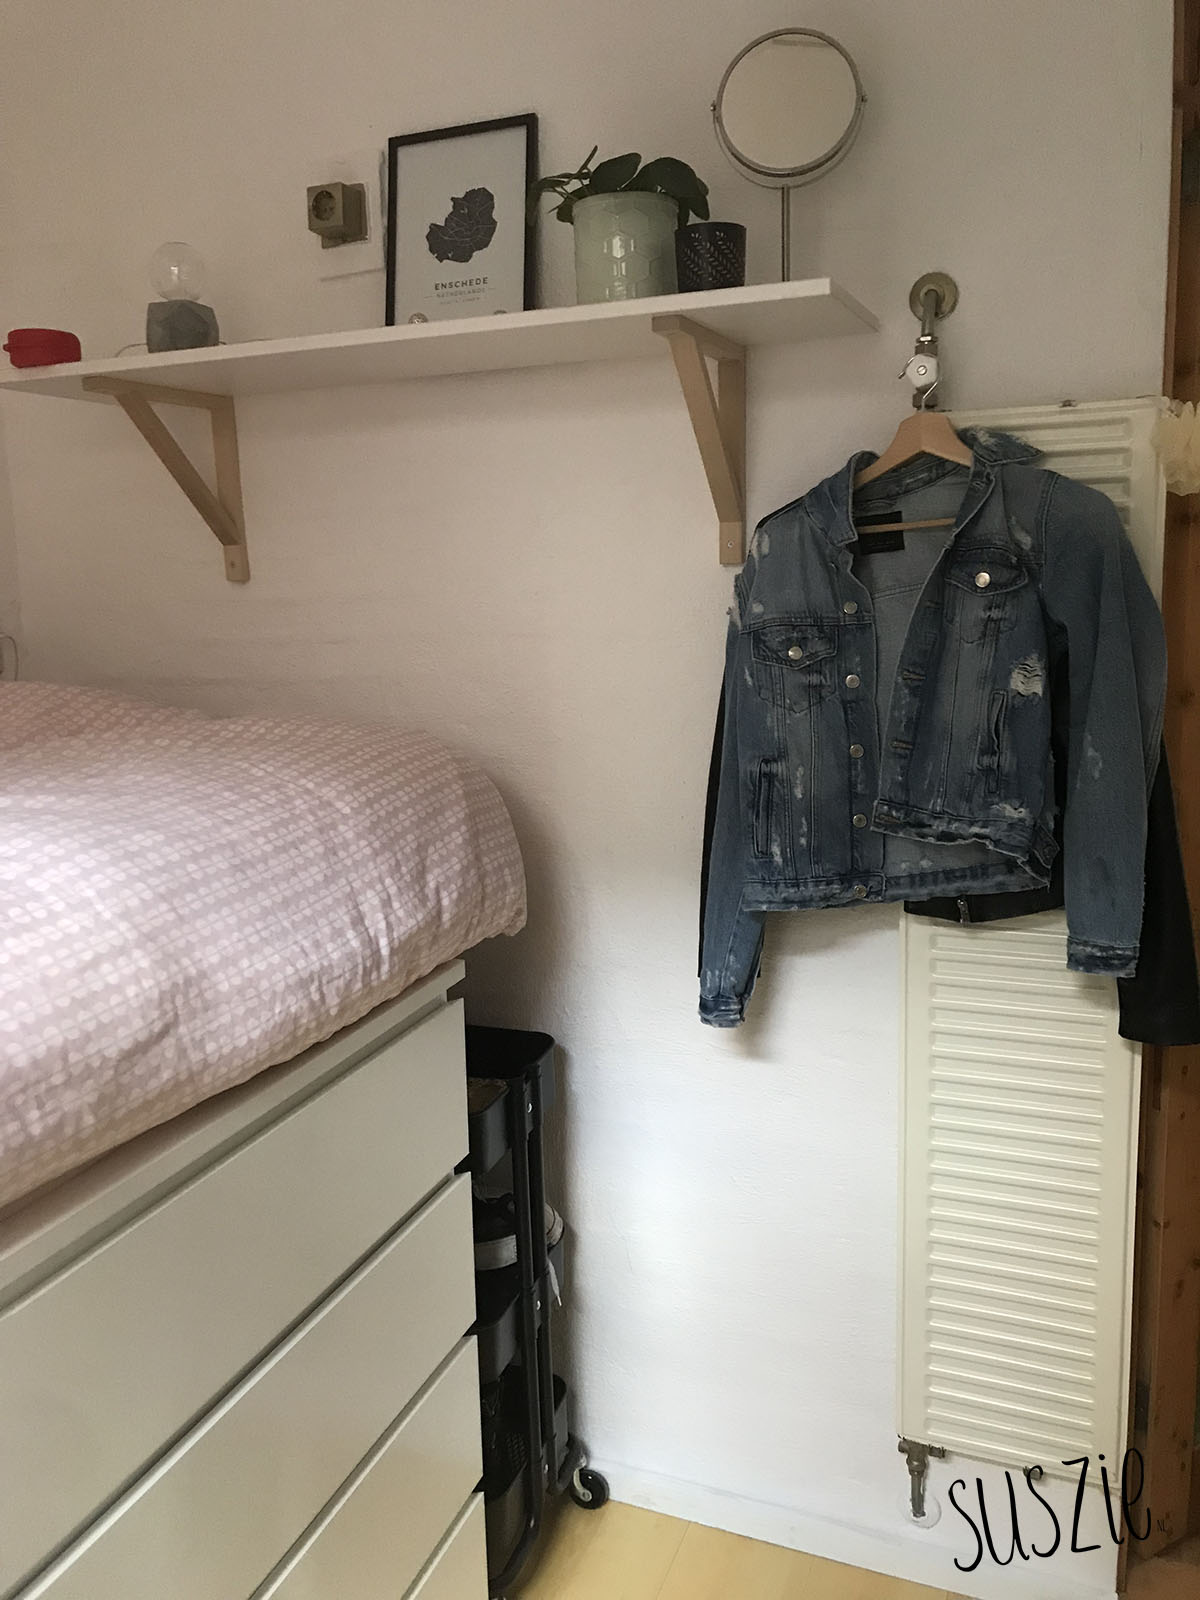 Een bed maken van IKEA malm kast (+roomtour!)